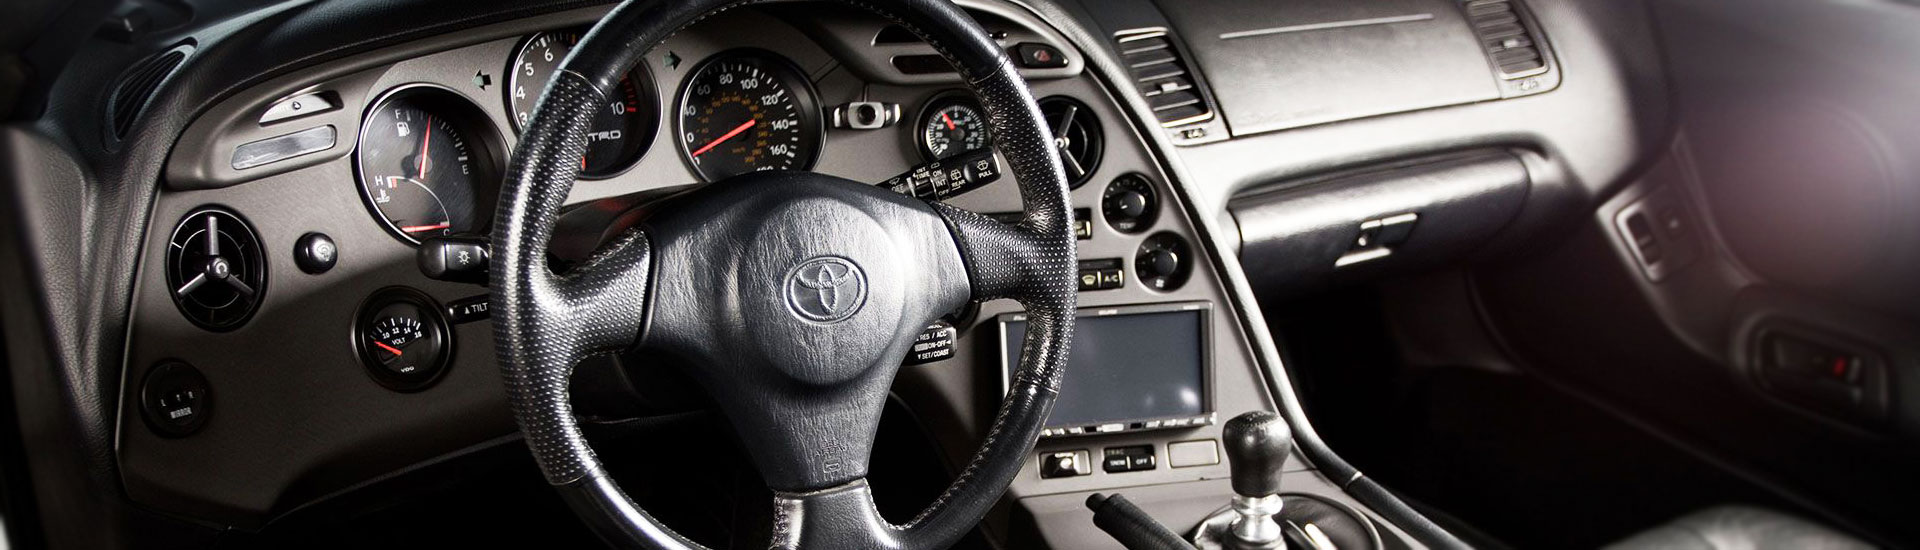 Toyota Supra Dash Kits